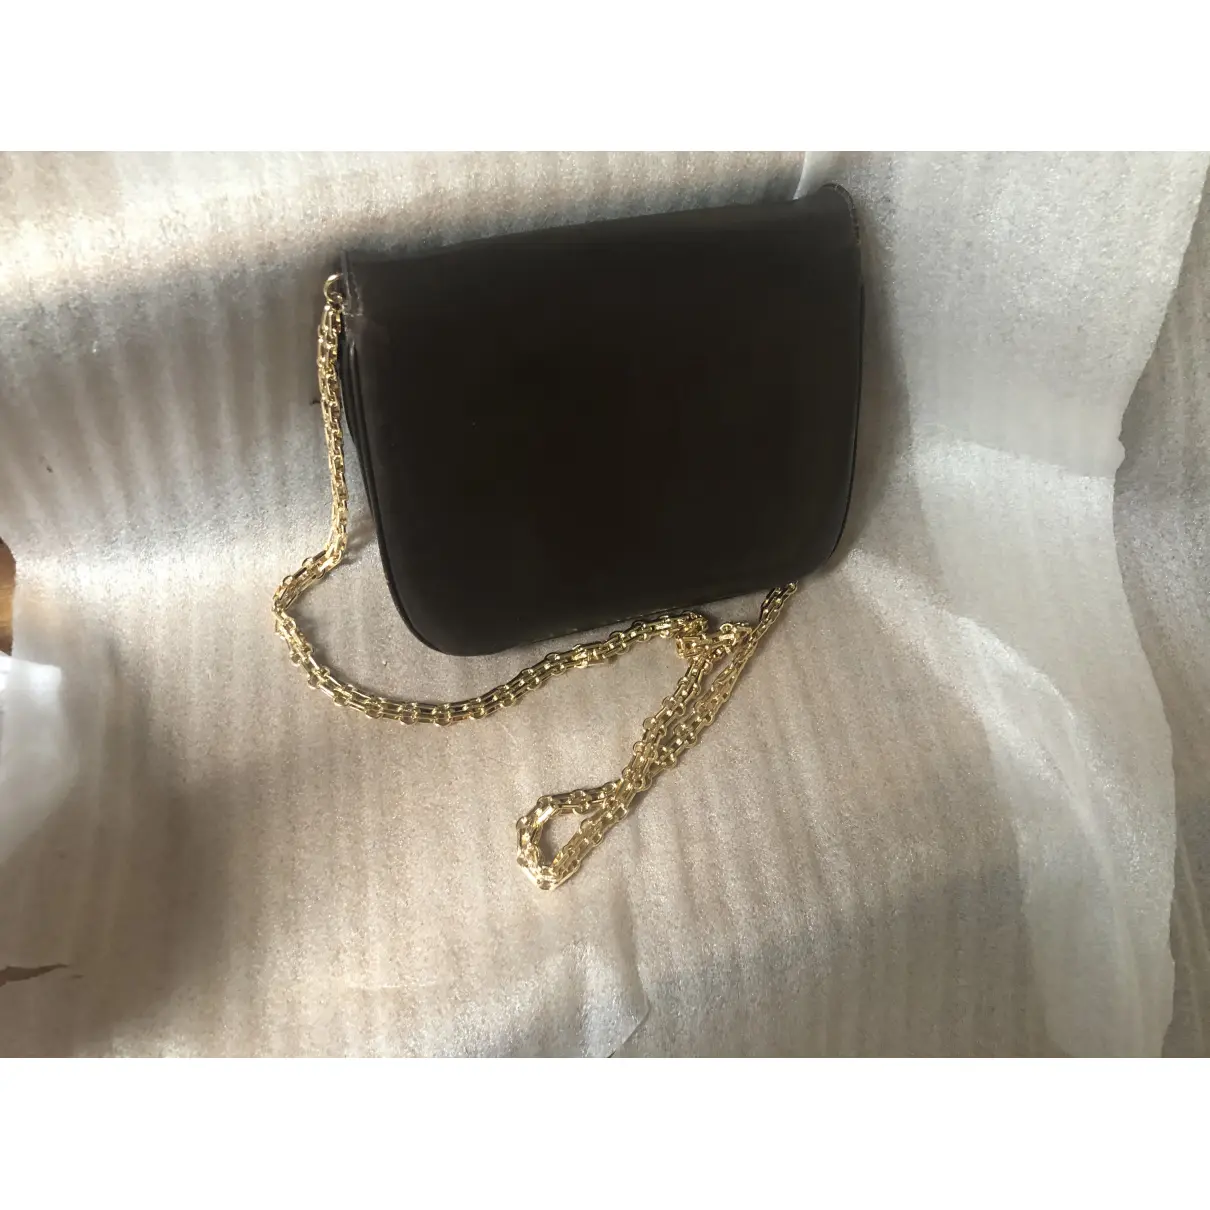 Buy Celine Leather crossbody bag online - Vintage